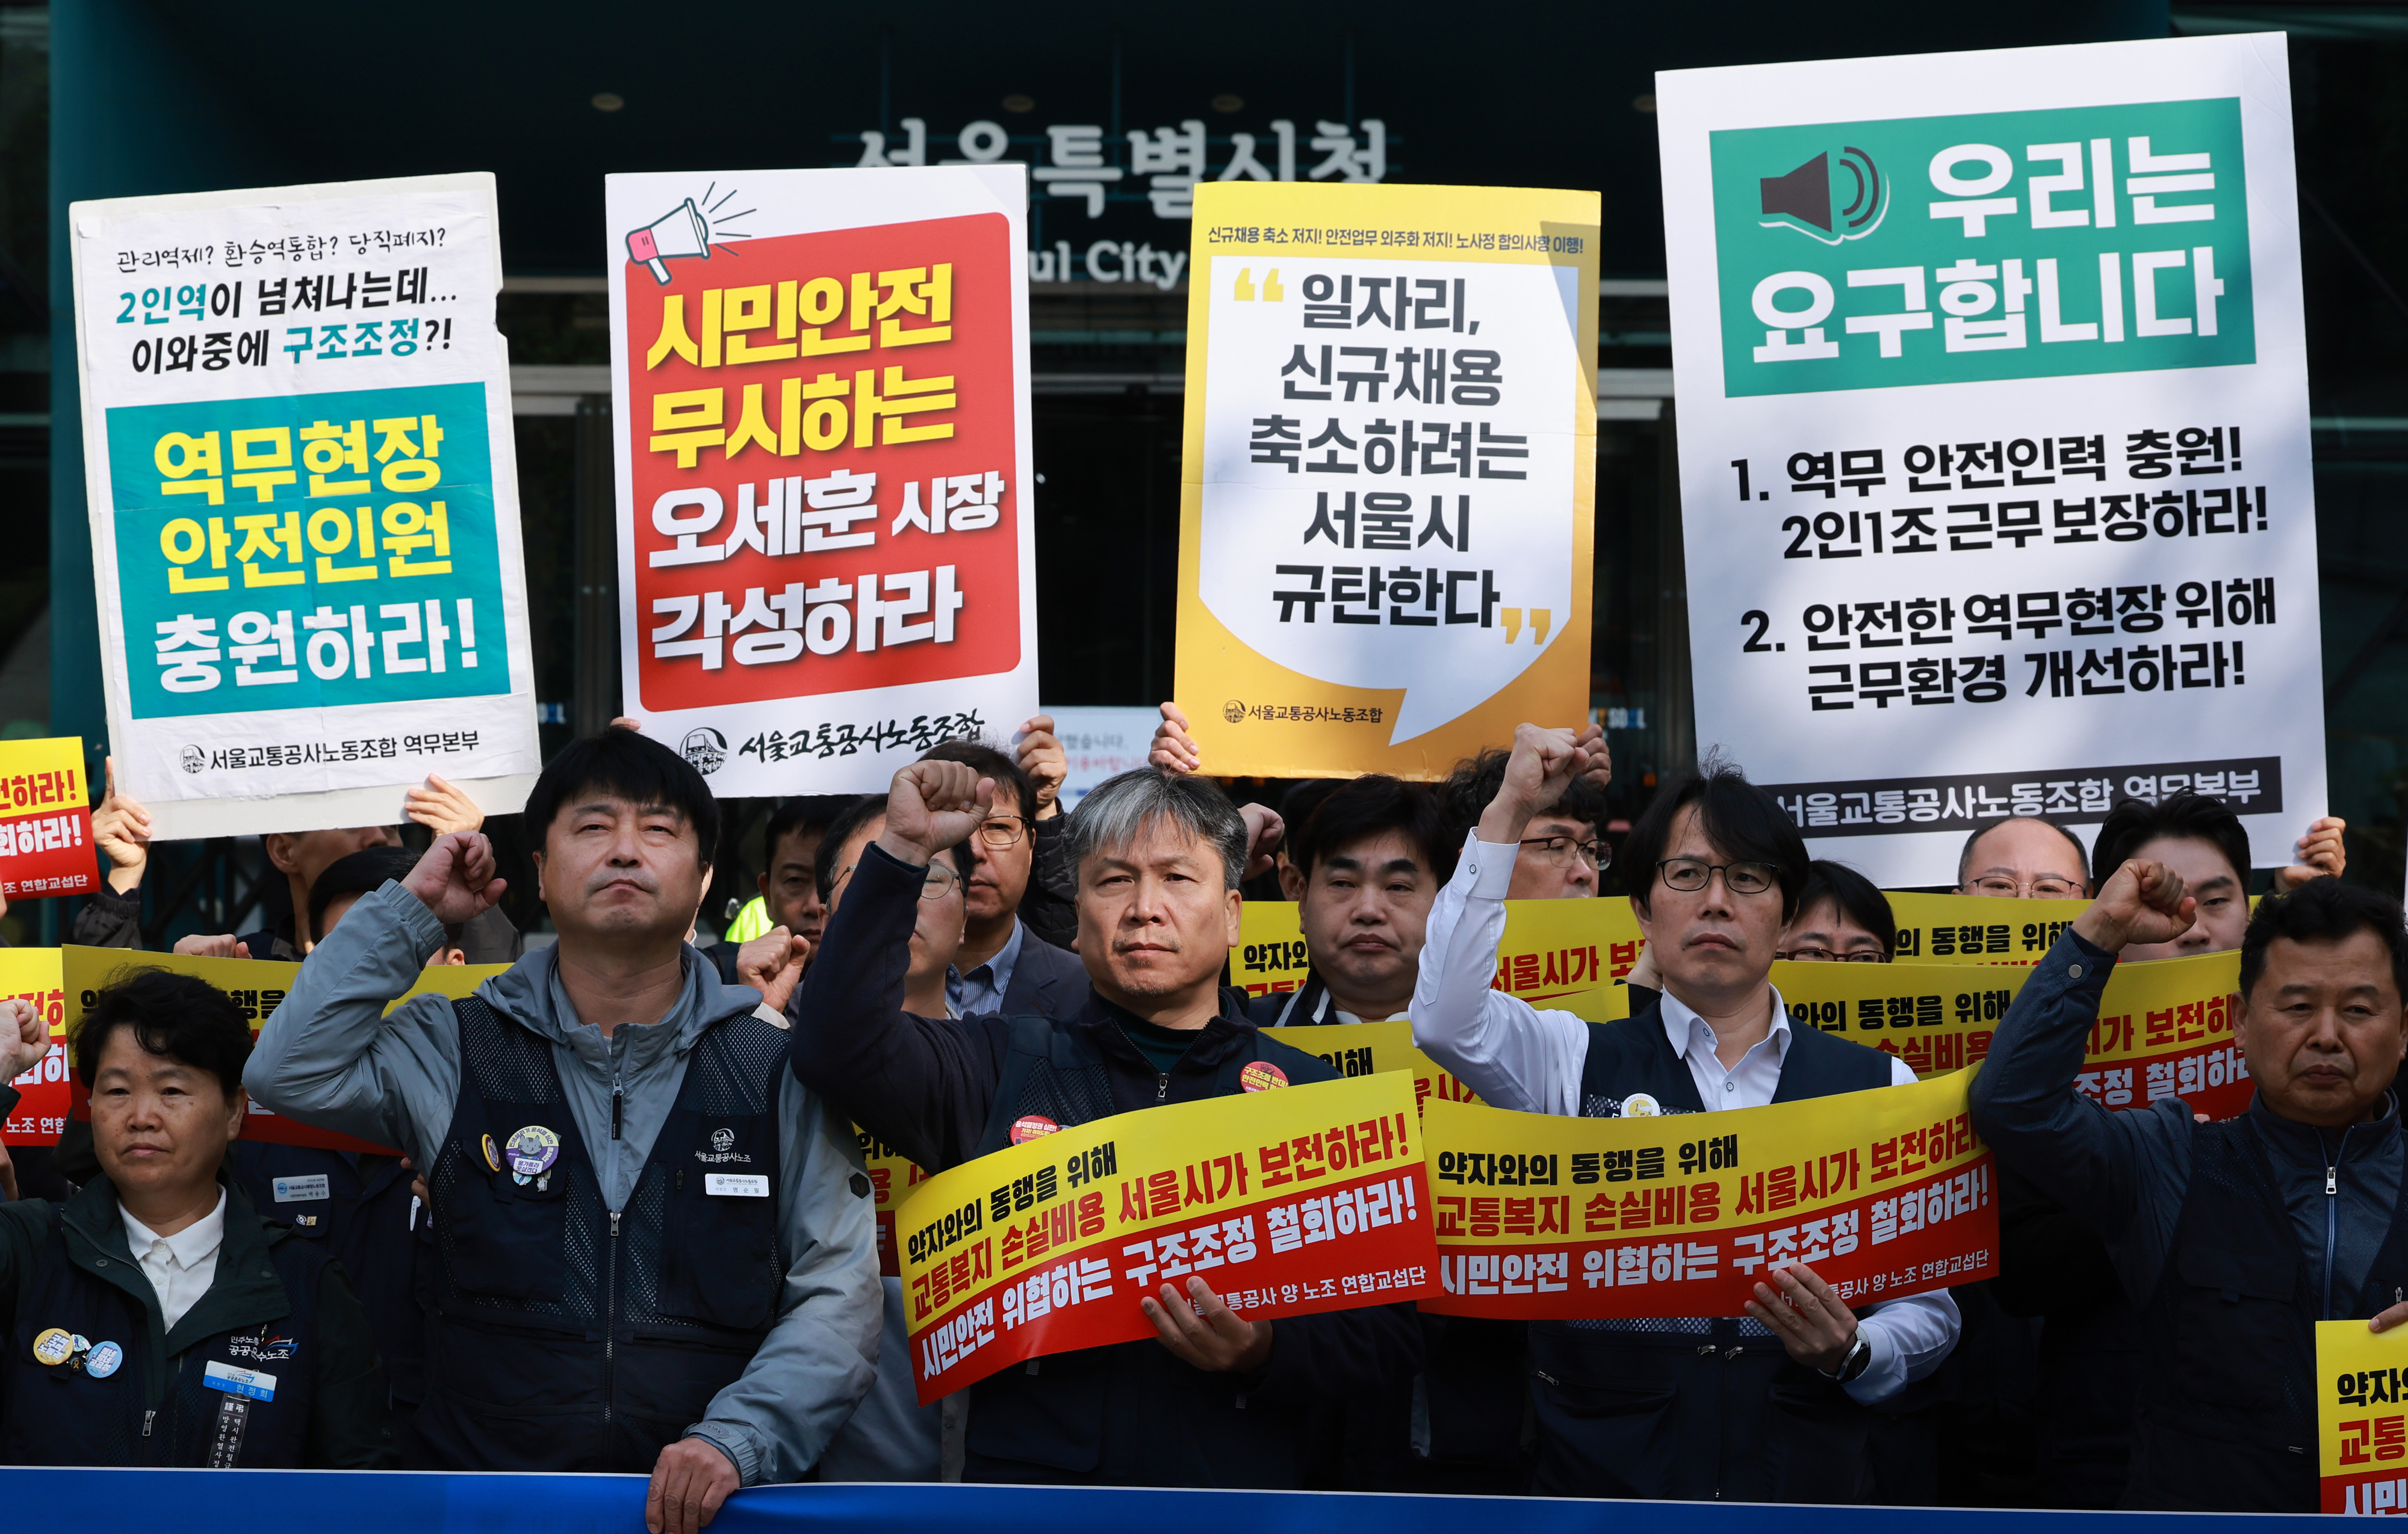 서울 지하철 파업 등 투쟁 계획 발표